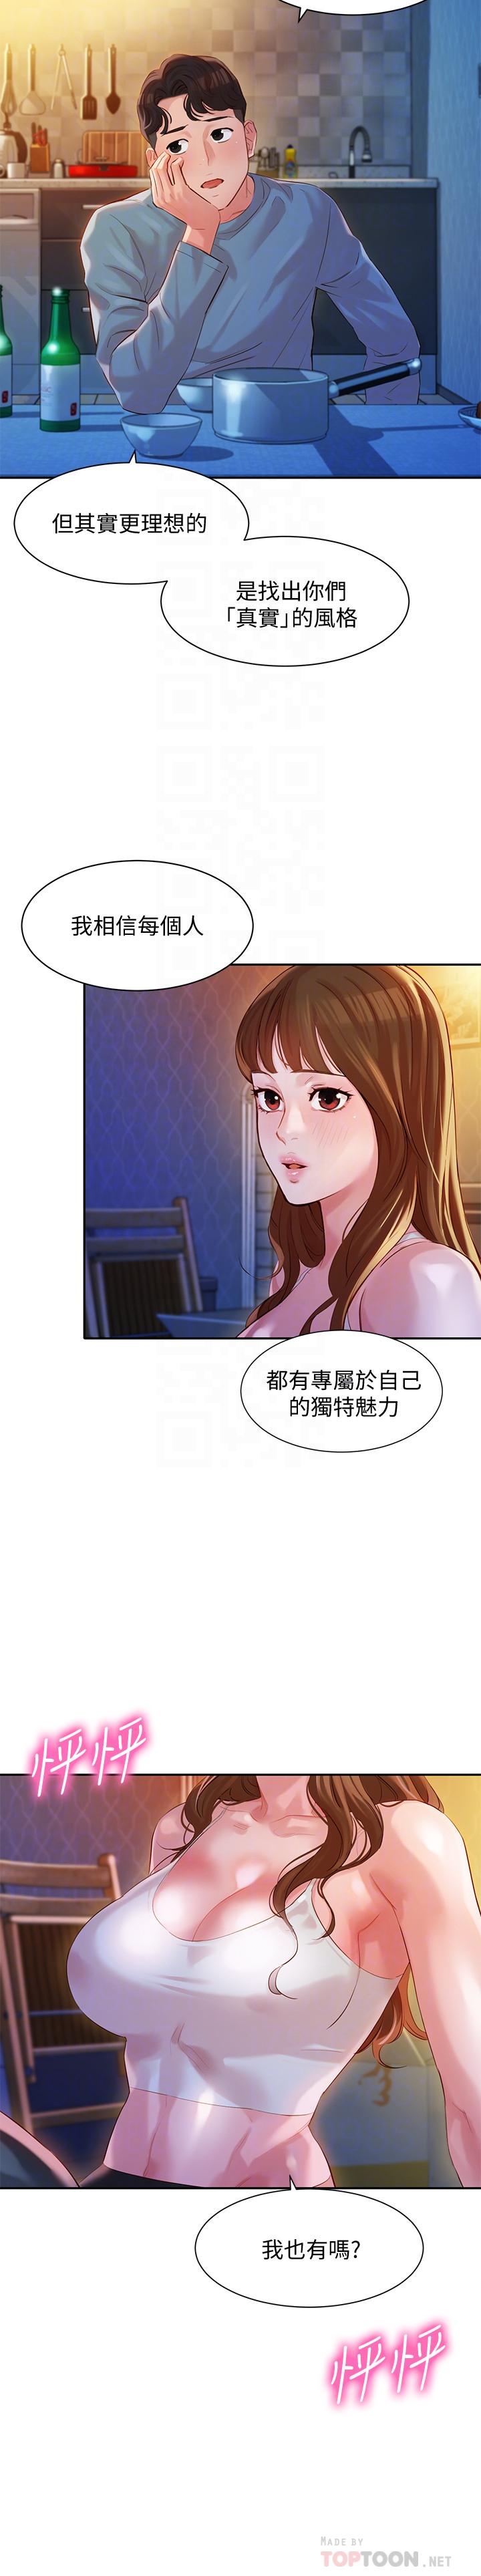 韩国污漫画 女神寫真 第14话-在两人之间流动的微妙情感 16